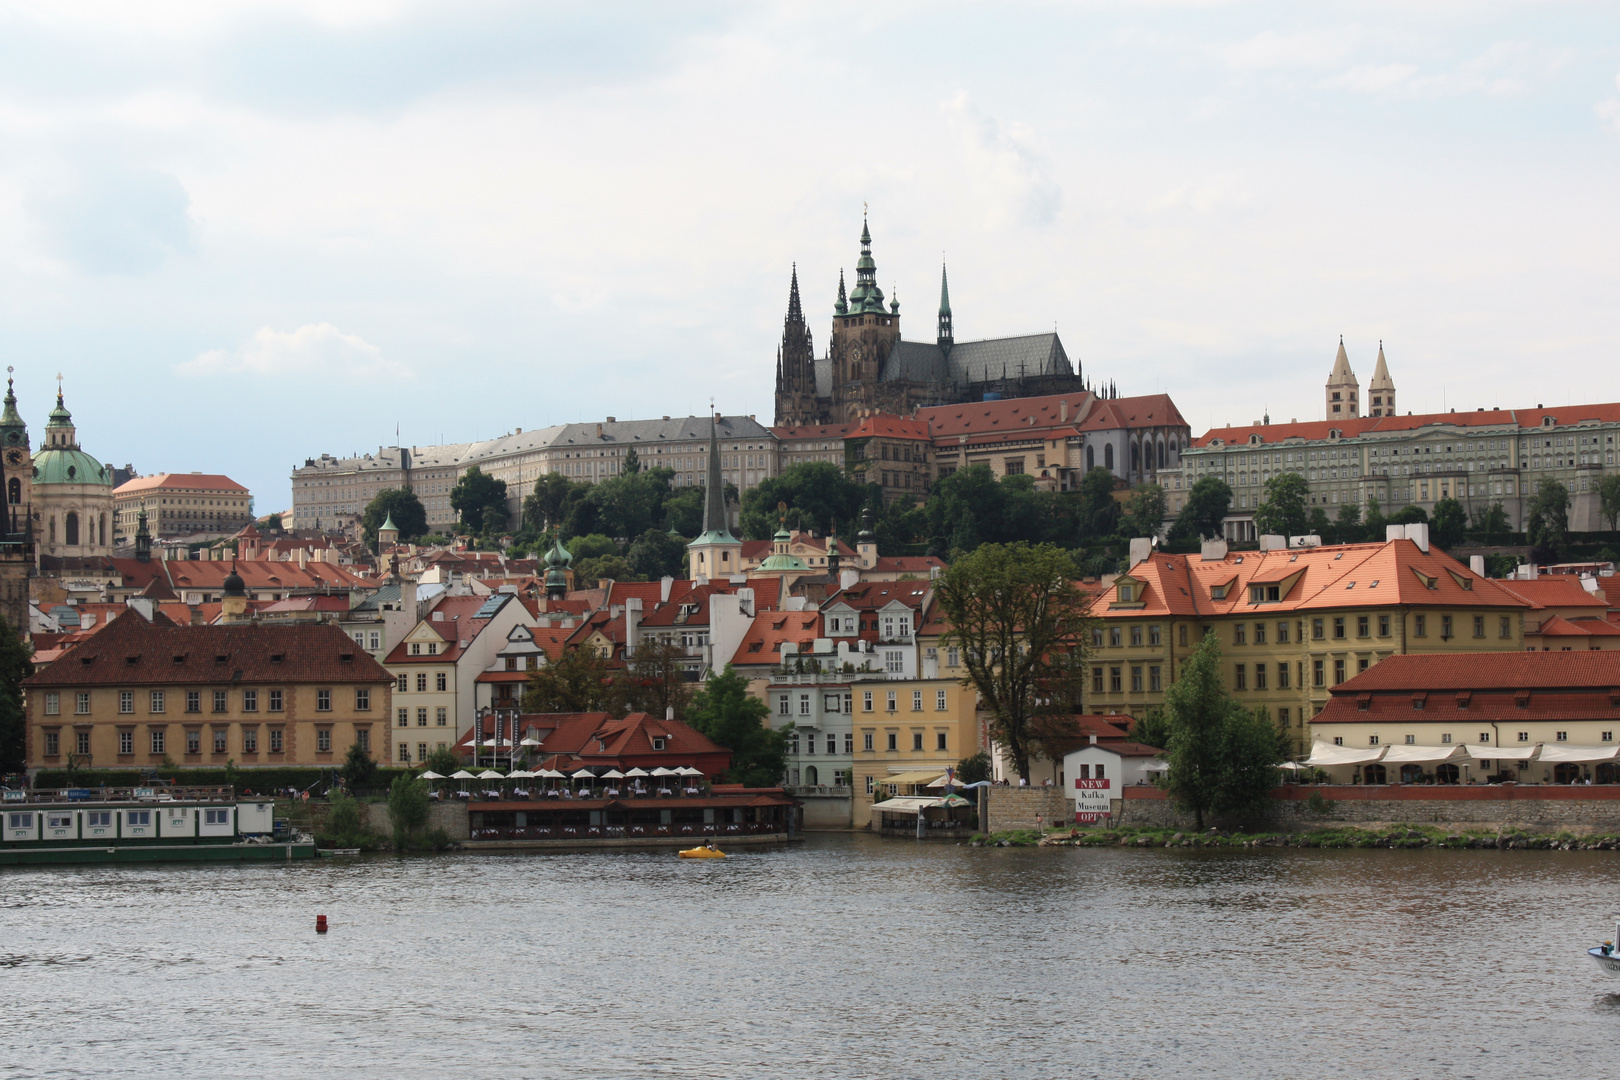 Blick auf den St. Veits Dom in Prag